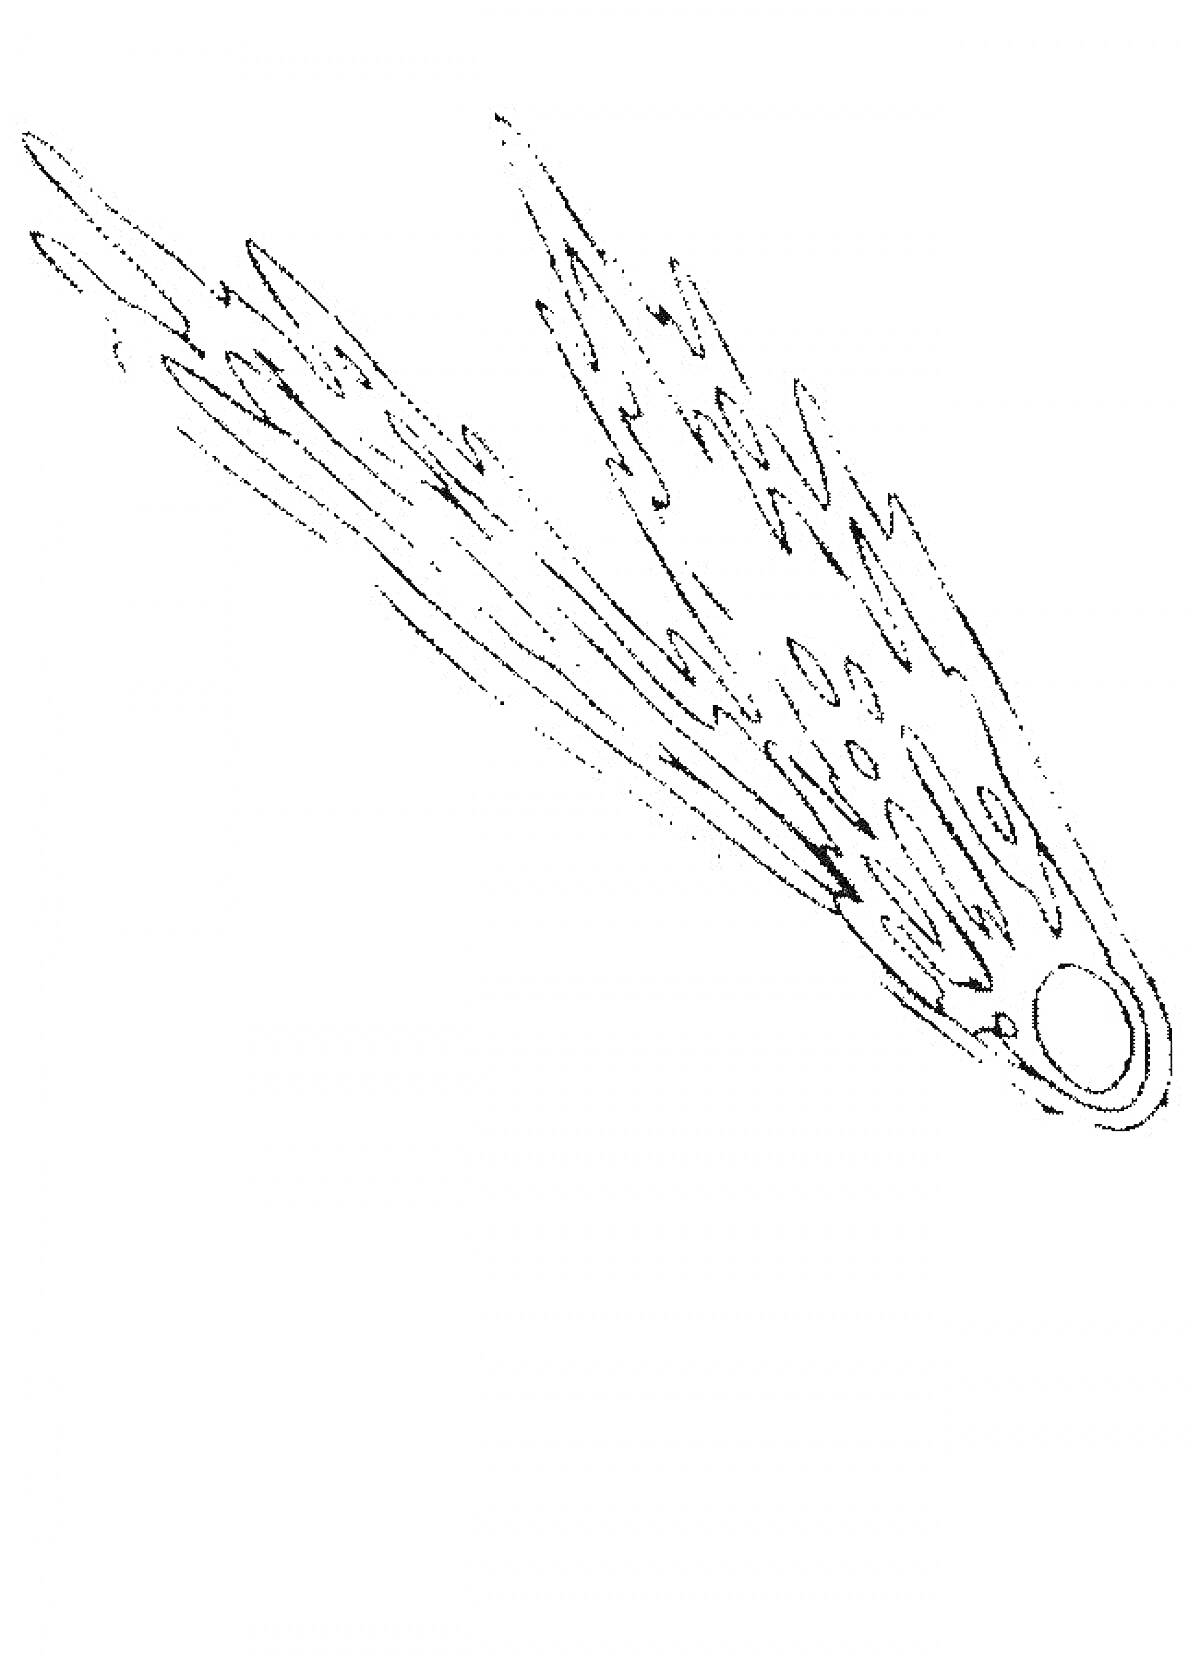 Комета с длинным хвостом